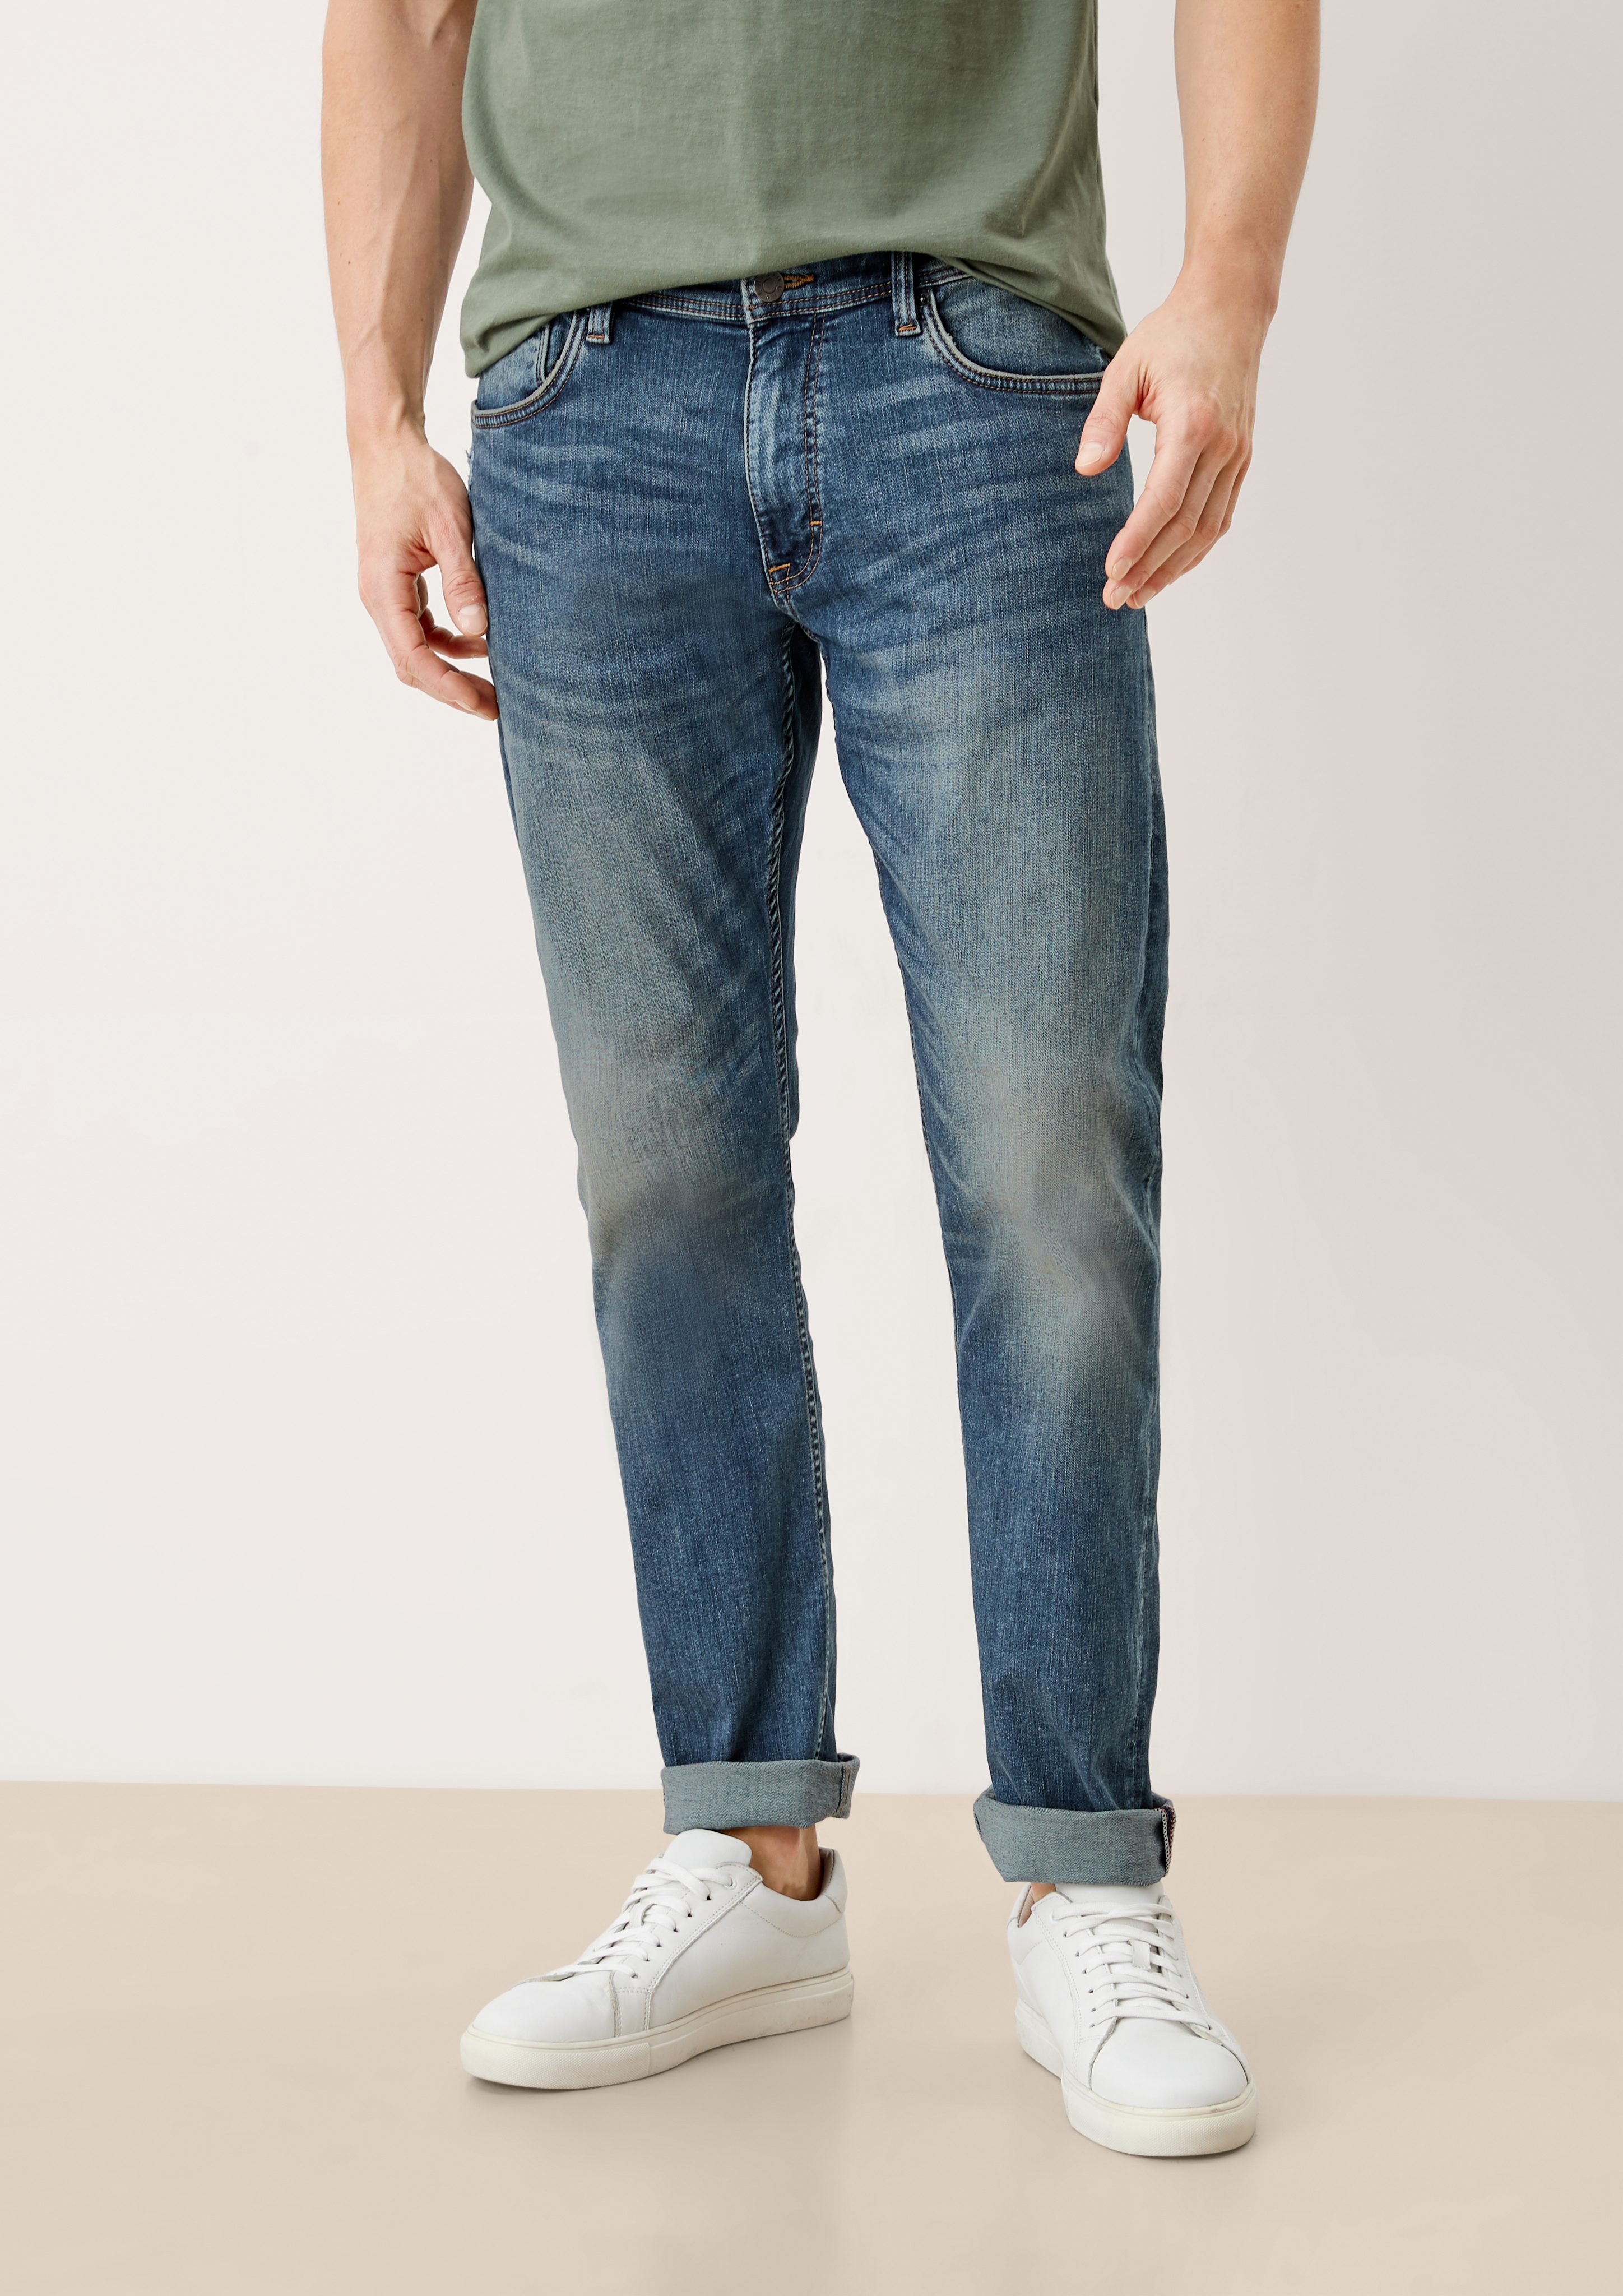 s.Oliver 5-Pocket-Jeans Slim light Fit Jeans Mid blue / Destroyes, Leg / Rise Keith / Waschung sretche Slim